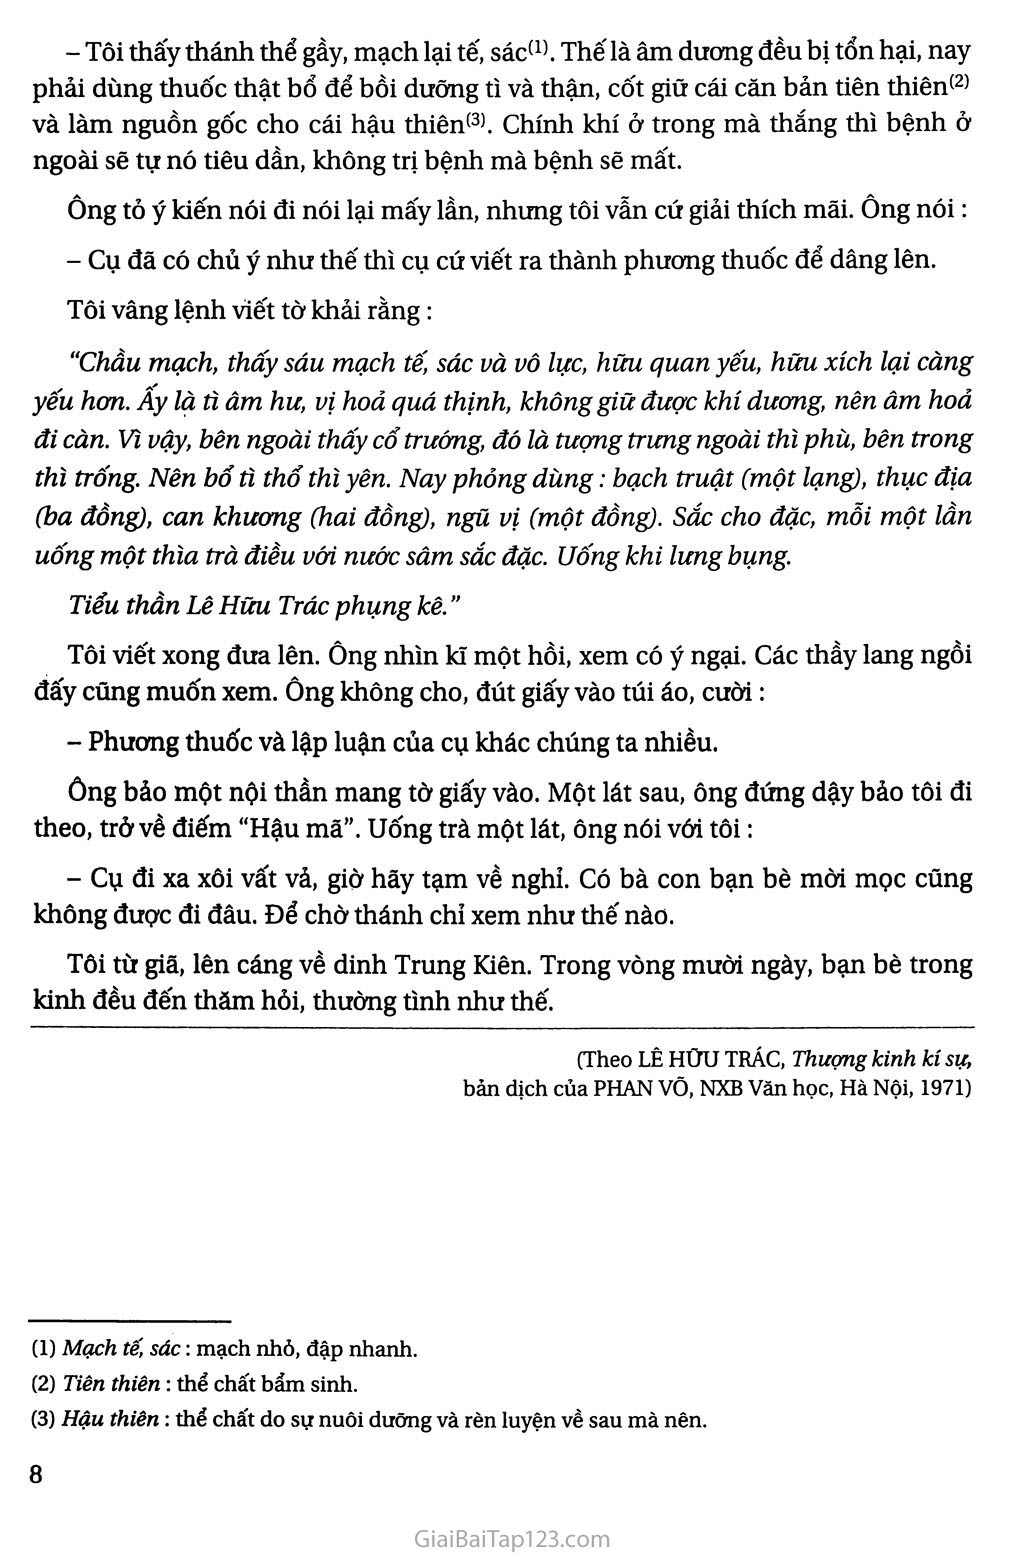 Vào phủ chúa Trịnh (trích Thượng kinh ký sự) trang 6